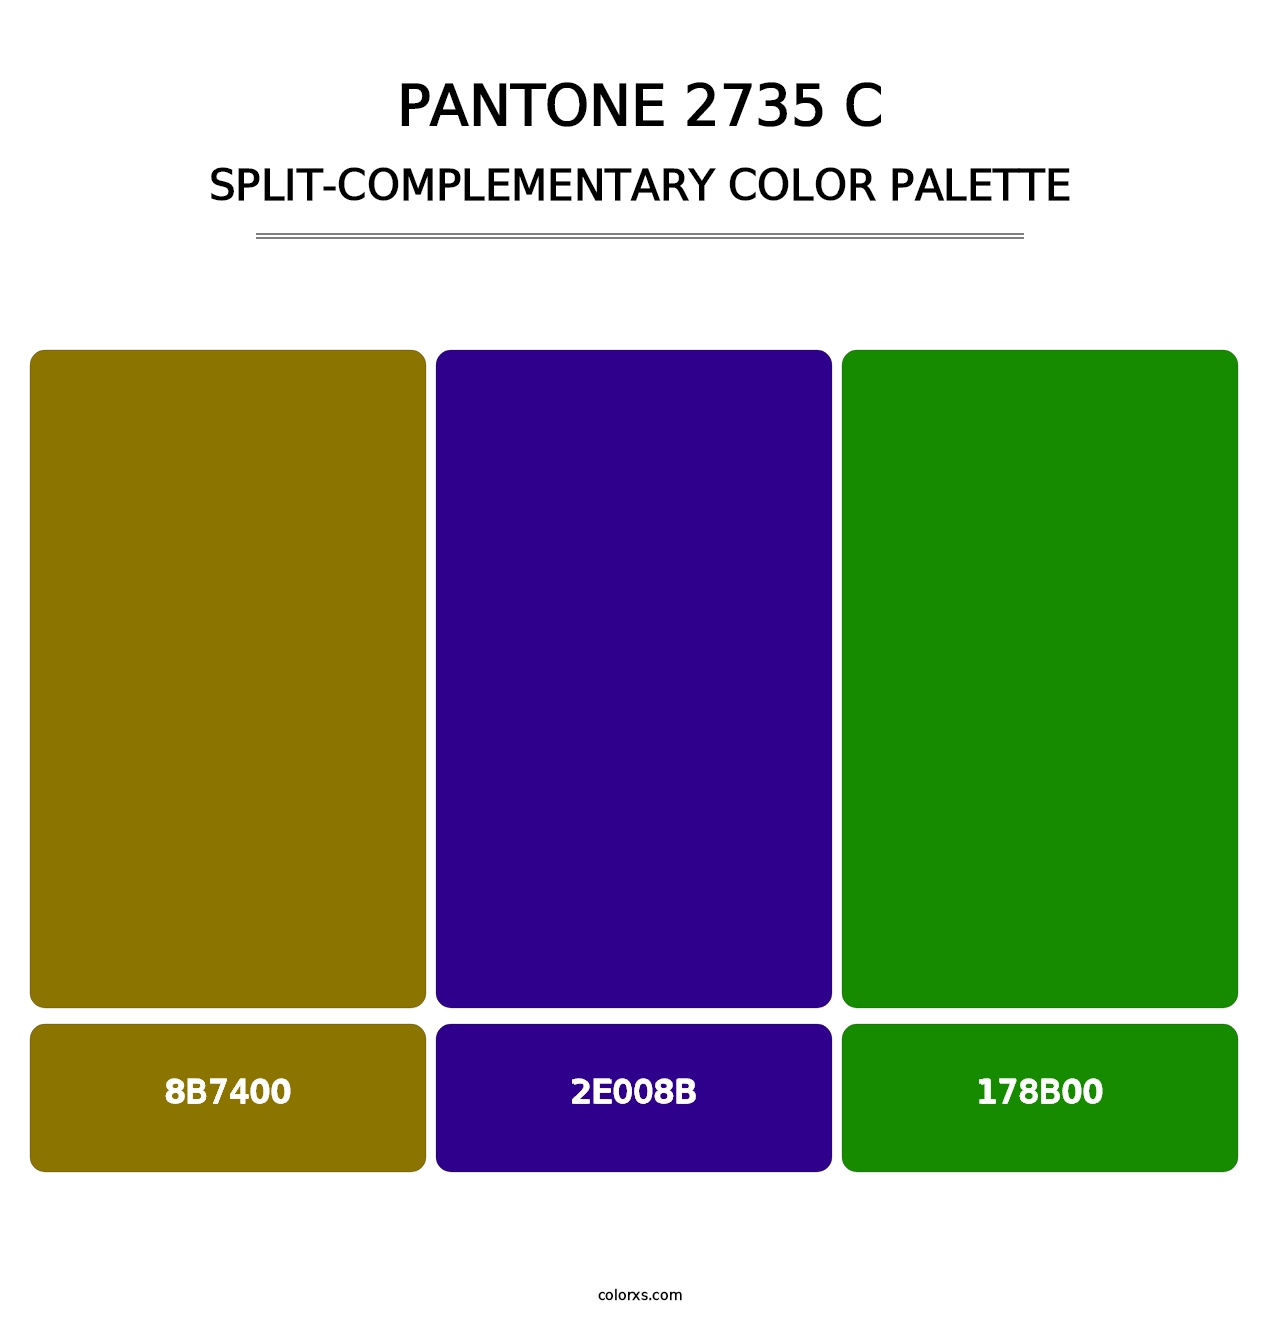 PANTONE 2735 C - Split-Complementary Color Palette